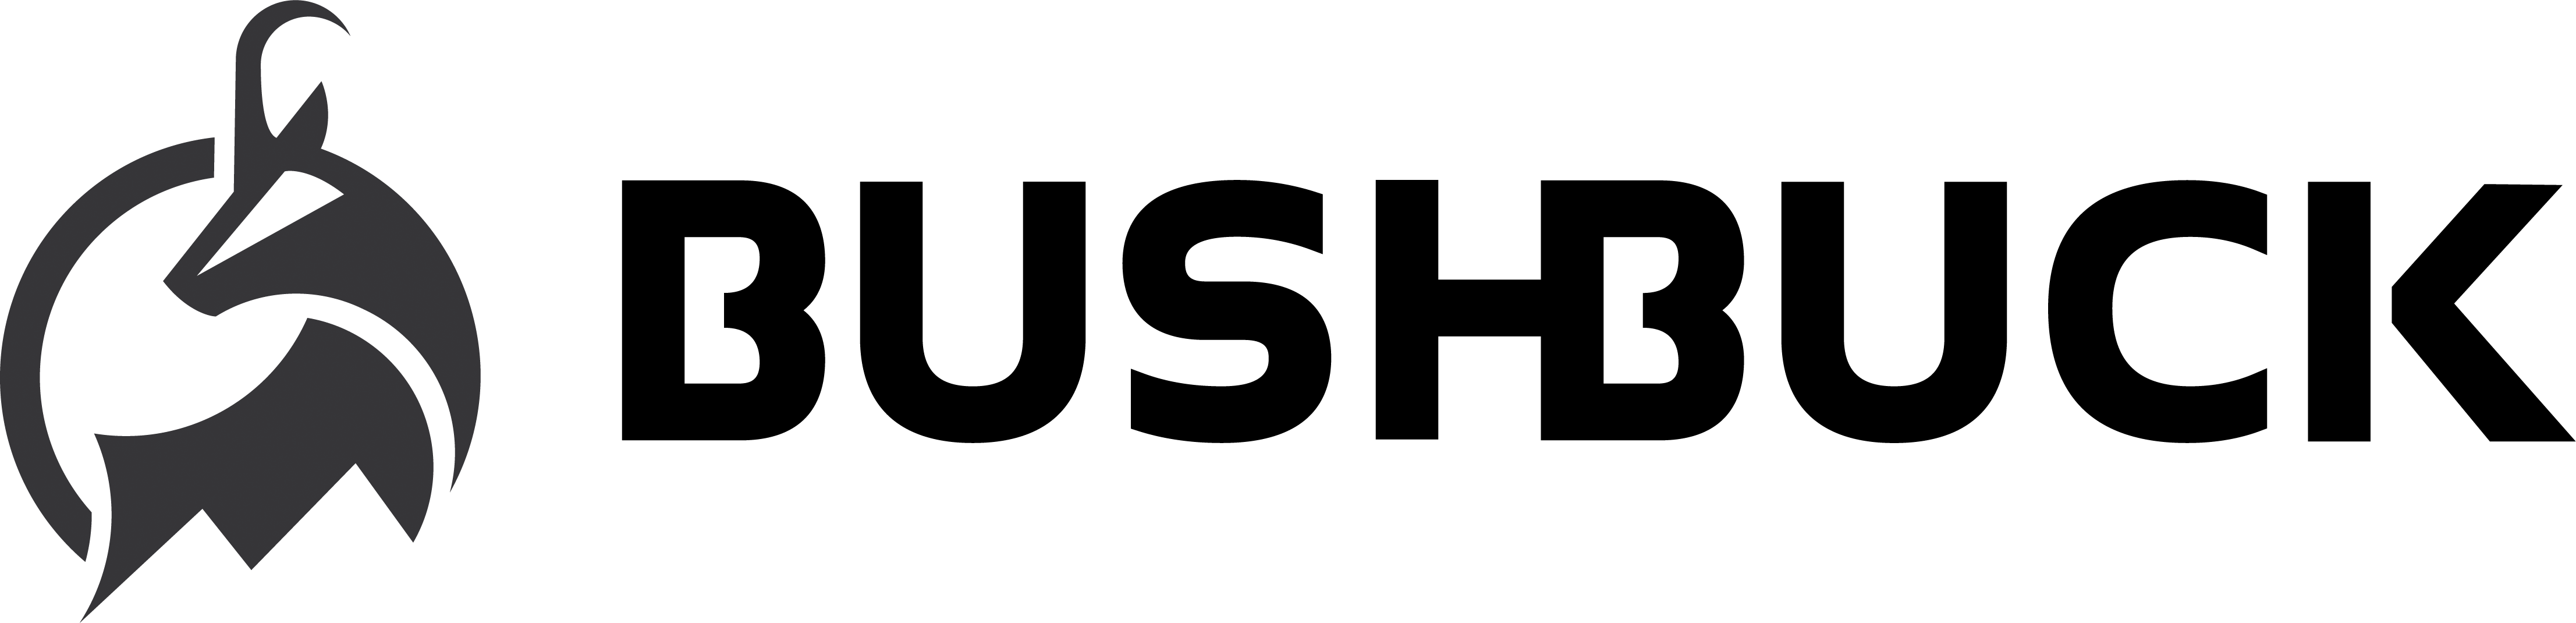 Bushbuck Logo Black Full